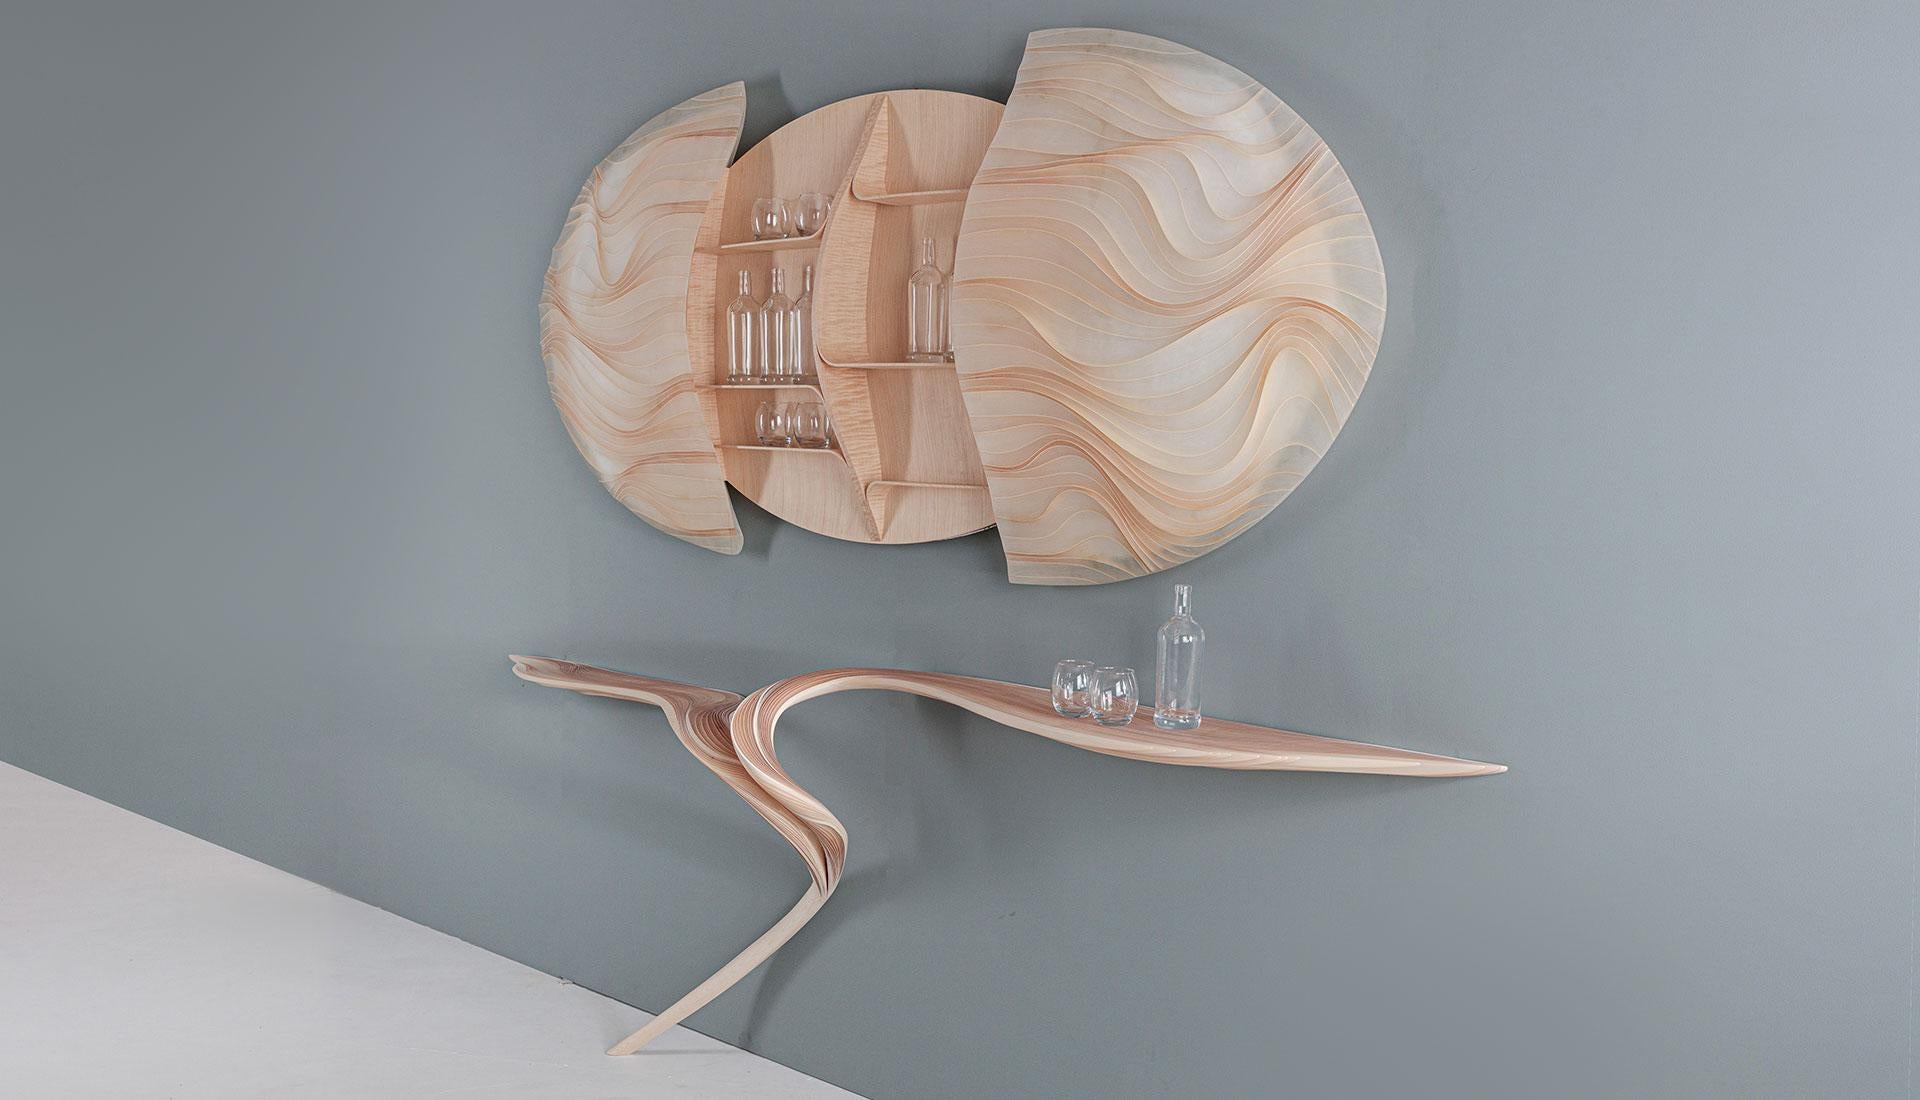 Ätherische Serie Drinks Cabinet and Bar des internationalen Künstlers Marc Fish. Hergestellt aus Ahorn und Harz in einer organischen skulpturalen Form. Elegant und kurvenreich hat die Bar Anmut, aber auch eine unmissverständliche Energie. Der